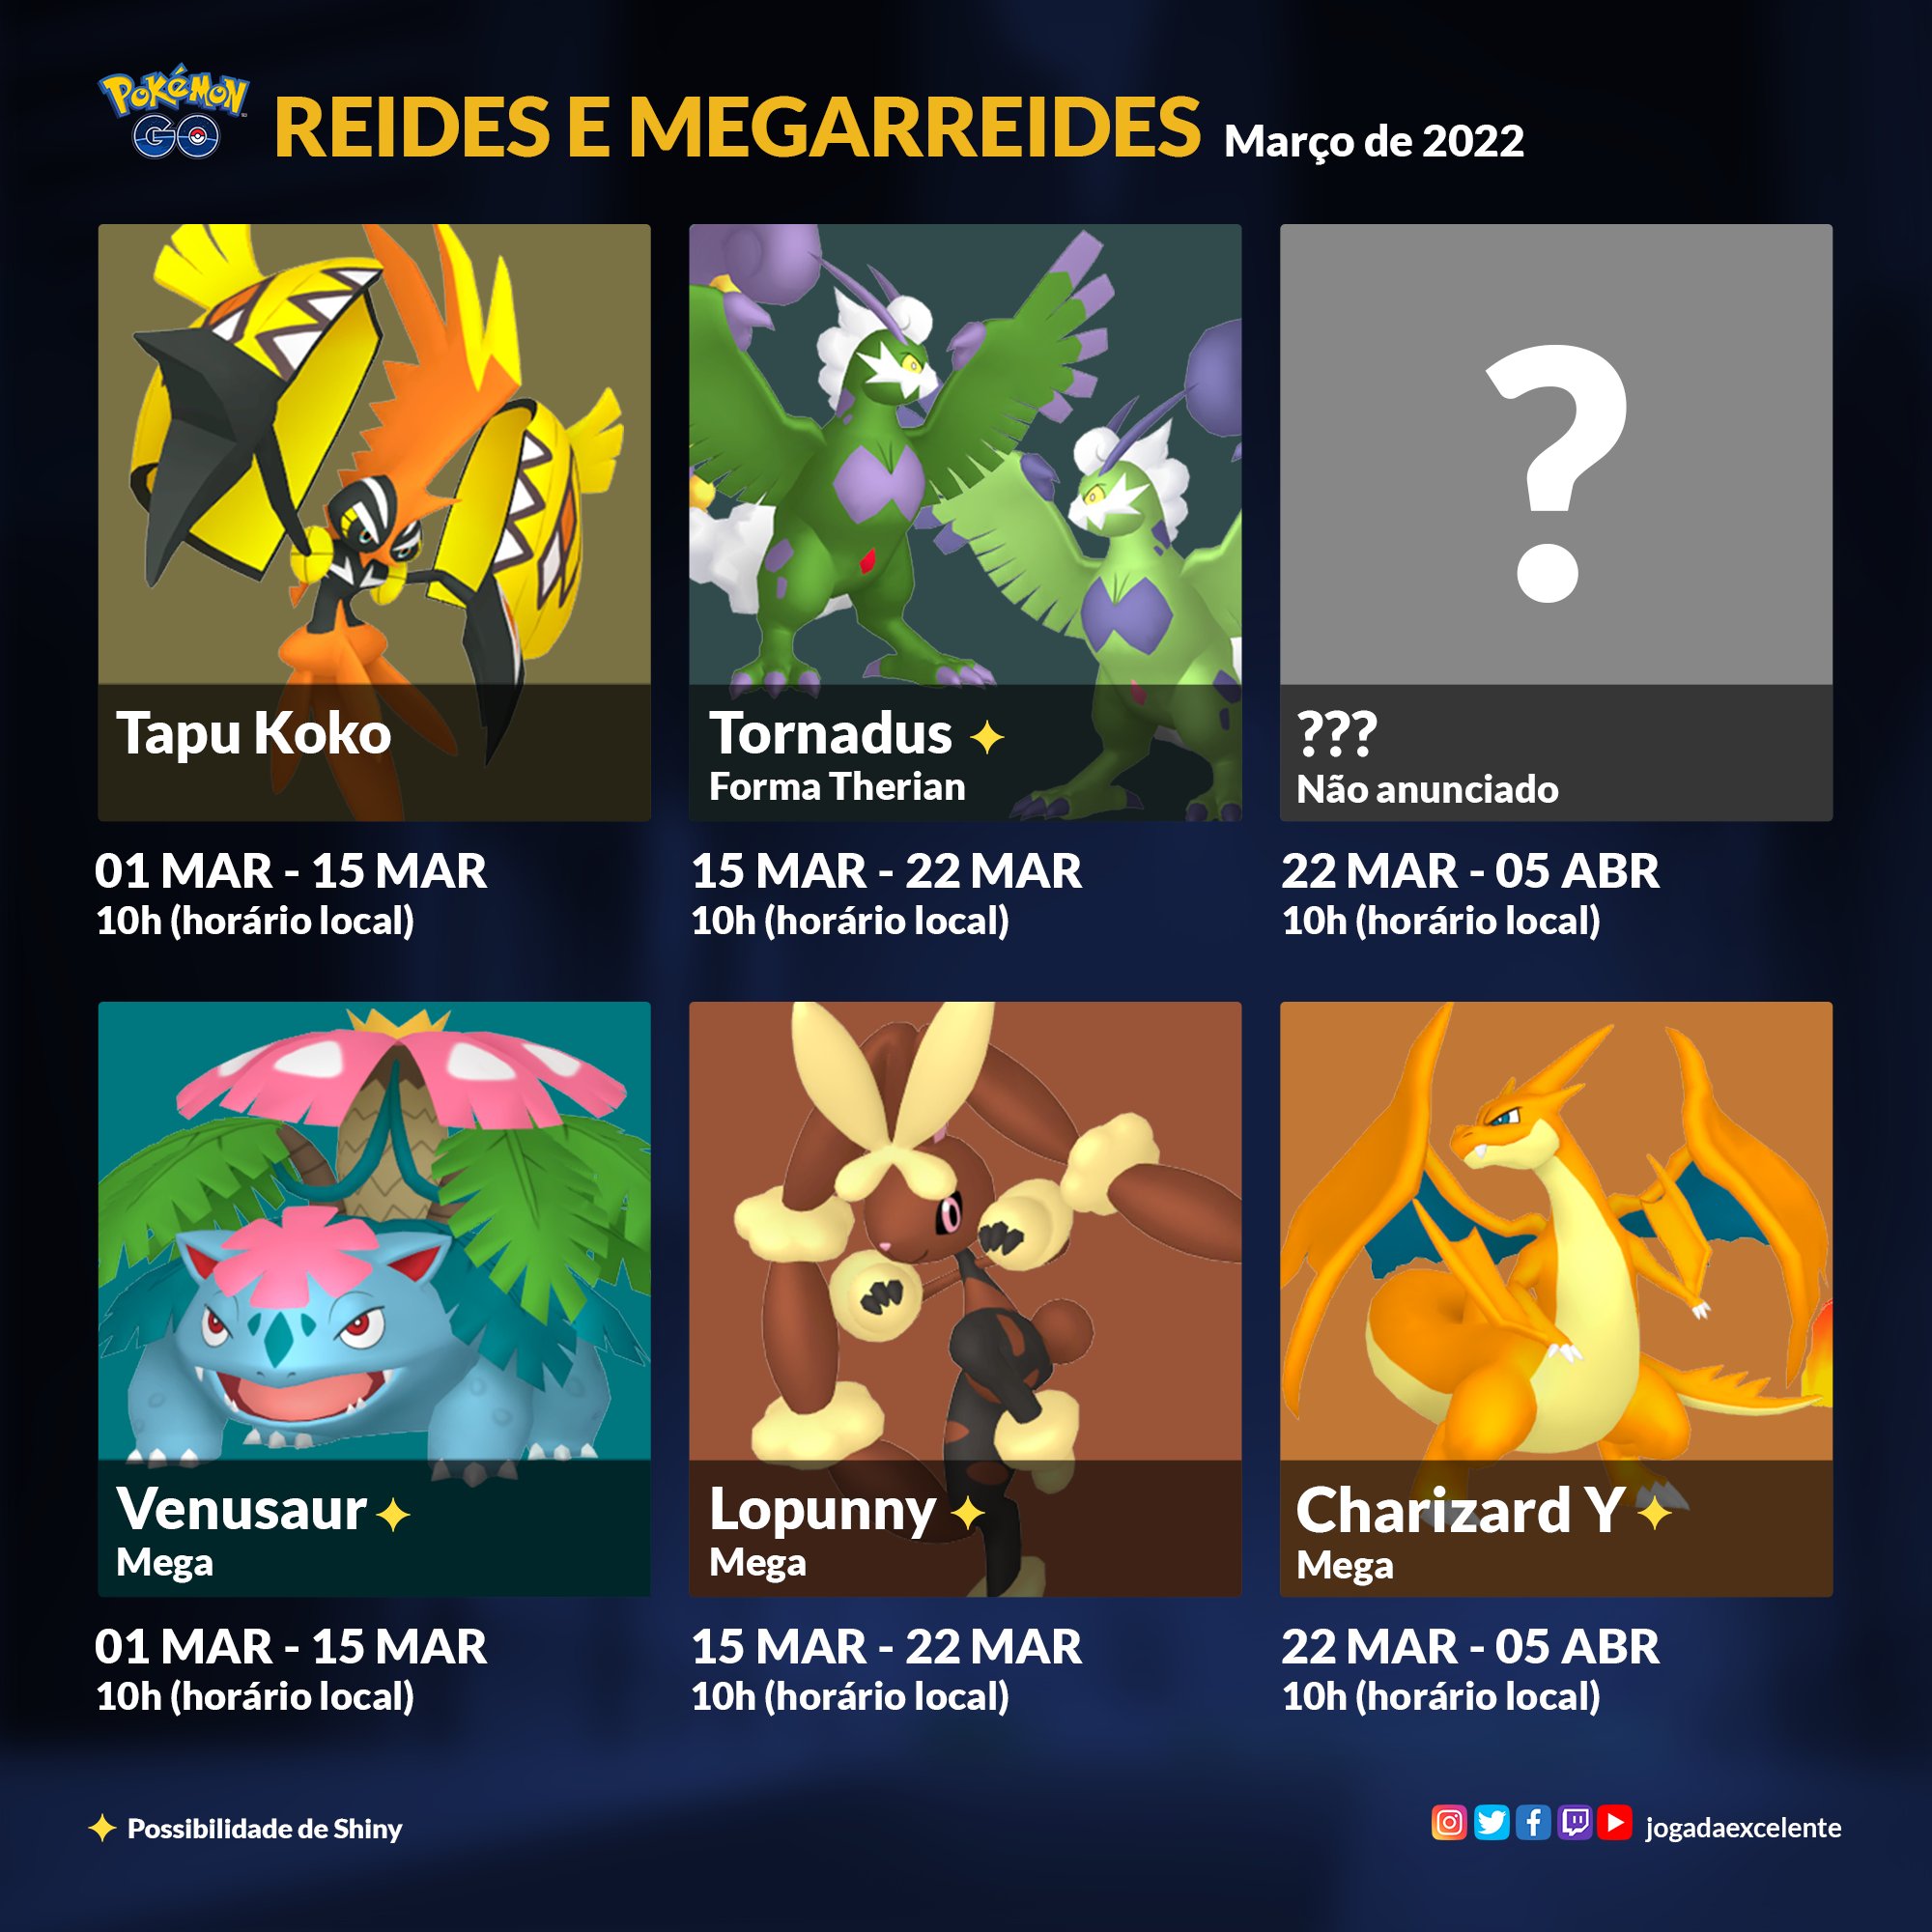 Jogada Excelente on X: Confira quais são os melhores Pokémon de cada tipo  em Pokémon GO. Atualização: com o anúncio de Tornadus como o Próximo Chefe  de Reides 5 estrelas, ele entra